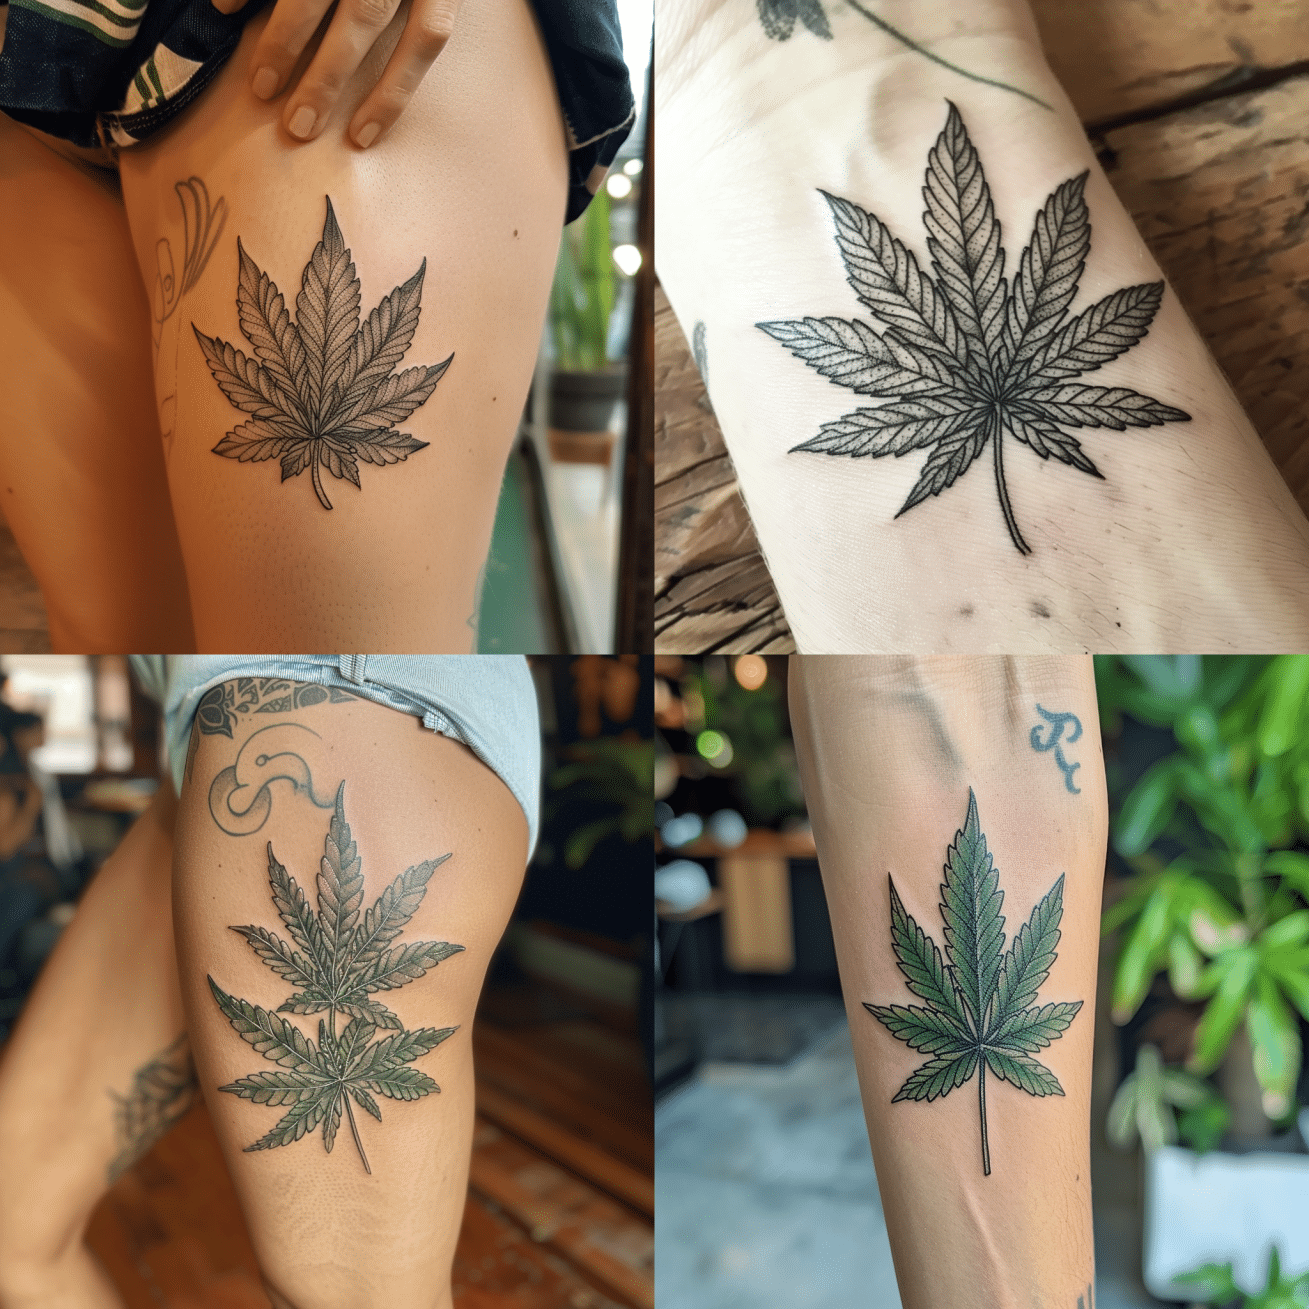 Pot leaf tattoos